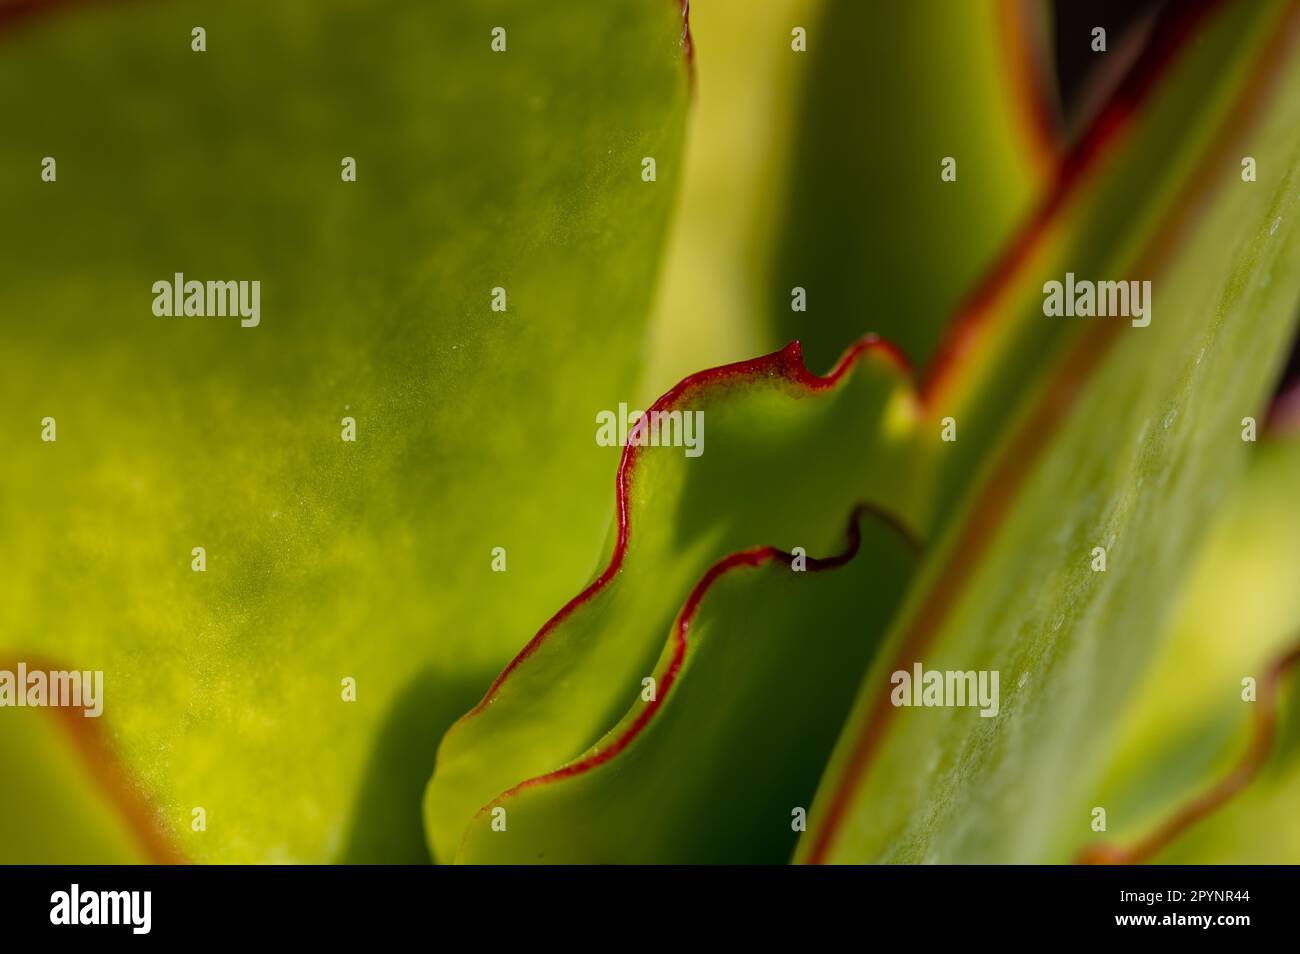 Hintergrund und Textur: Grüne Blätter mit roter Umrandung einer saftigen Pflanze Stockfoto